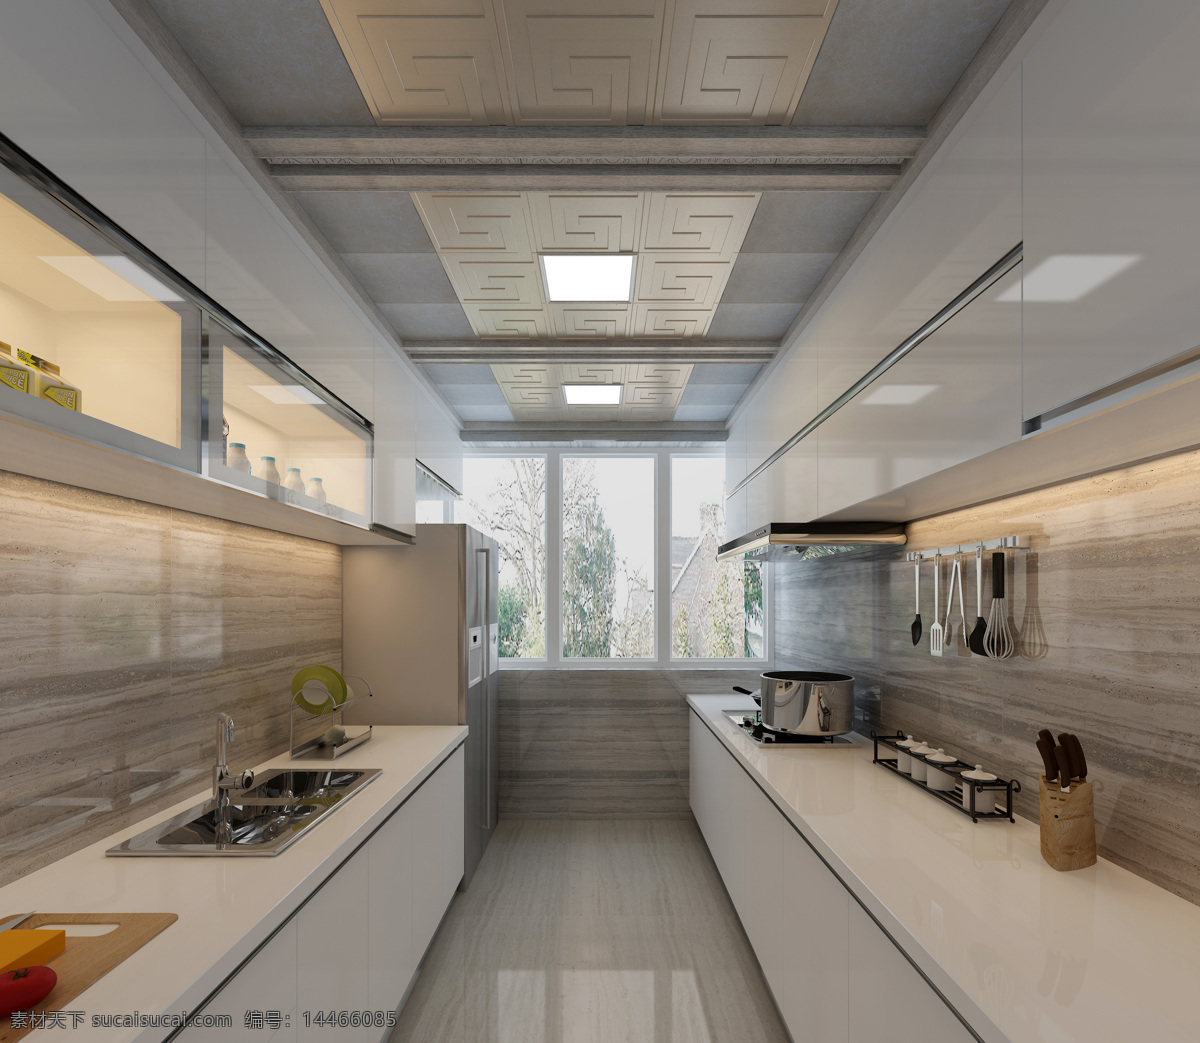 家居厨房 室内设计 家居 吊顶 集成吊顶 厨房设计 家居图片 环境设计